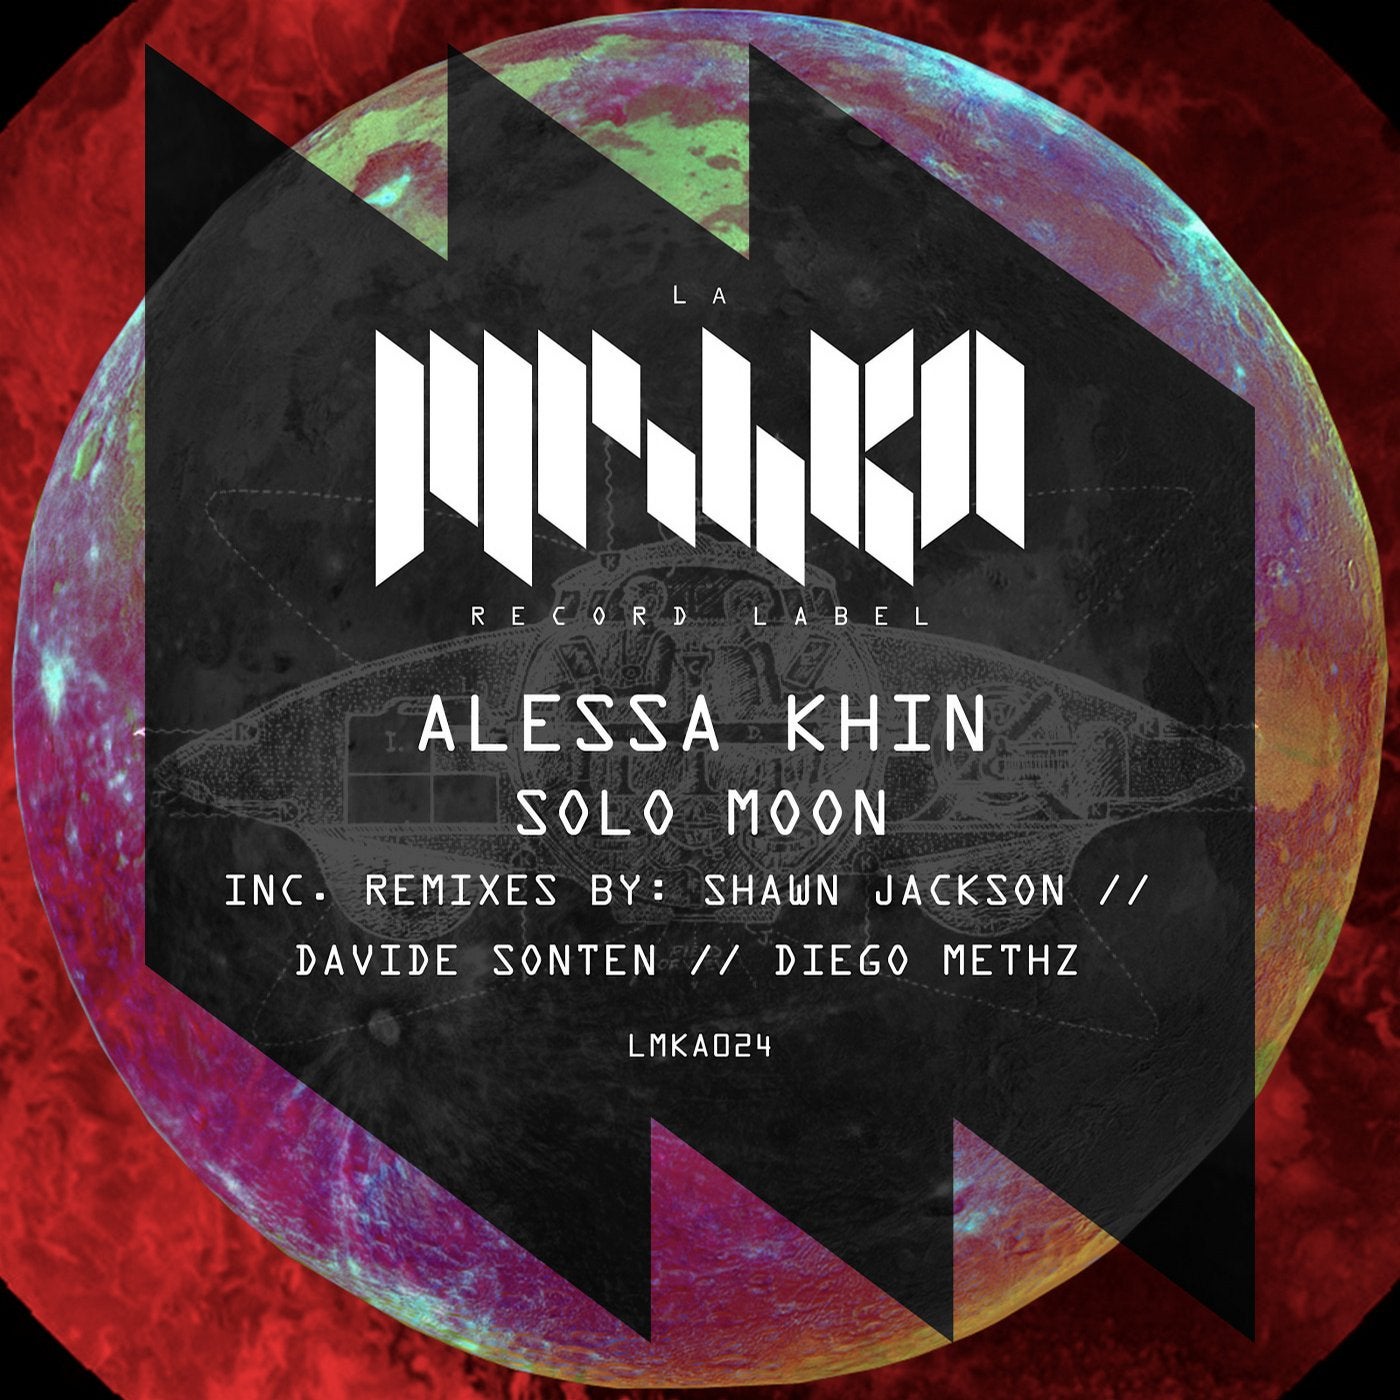 Alessa Khin, Kvant - Desert Moon. Alessa Khin & tim Loco - Phoenix. Alessa Khin, Kvant - Desert Moon (Kvant Remix). Man on moon extended mix